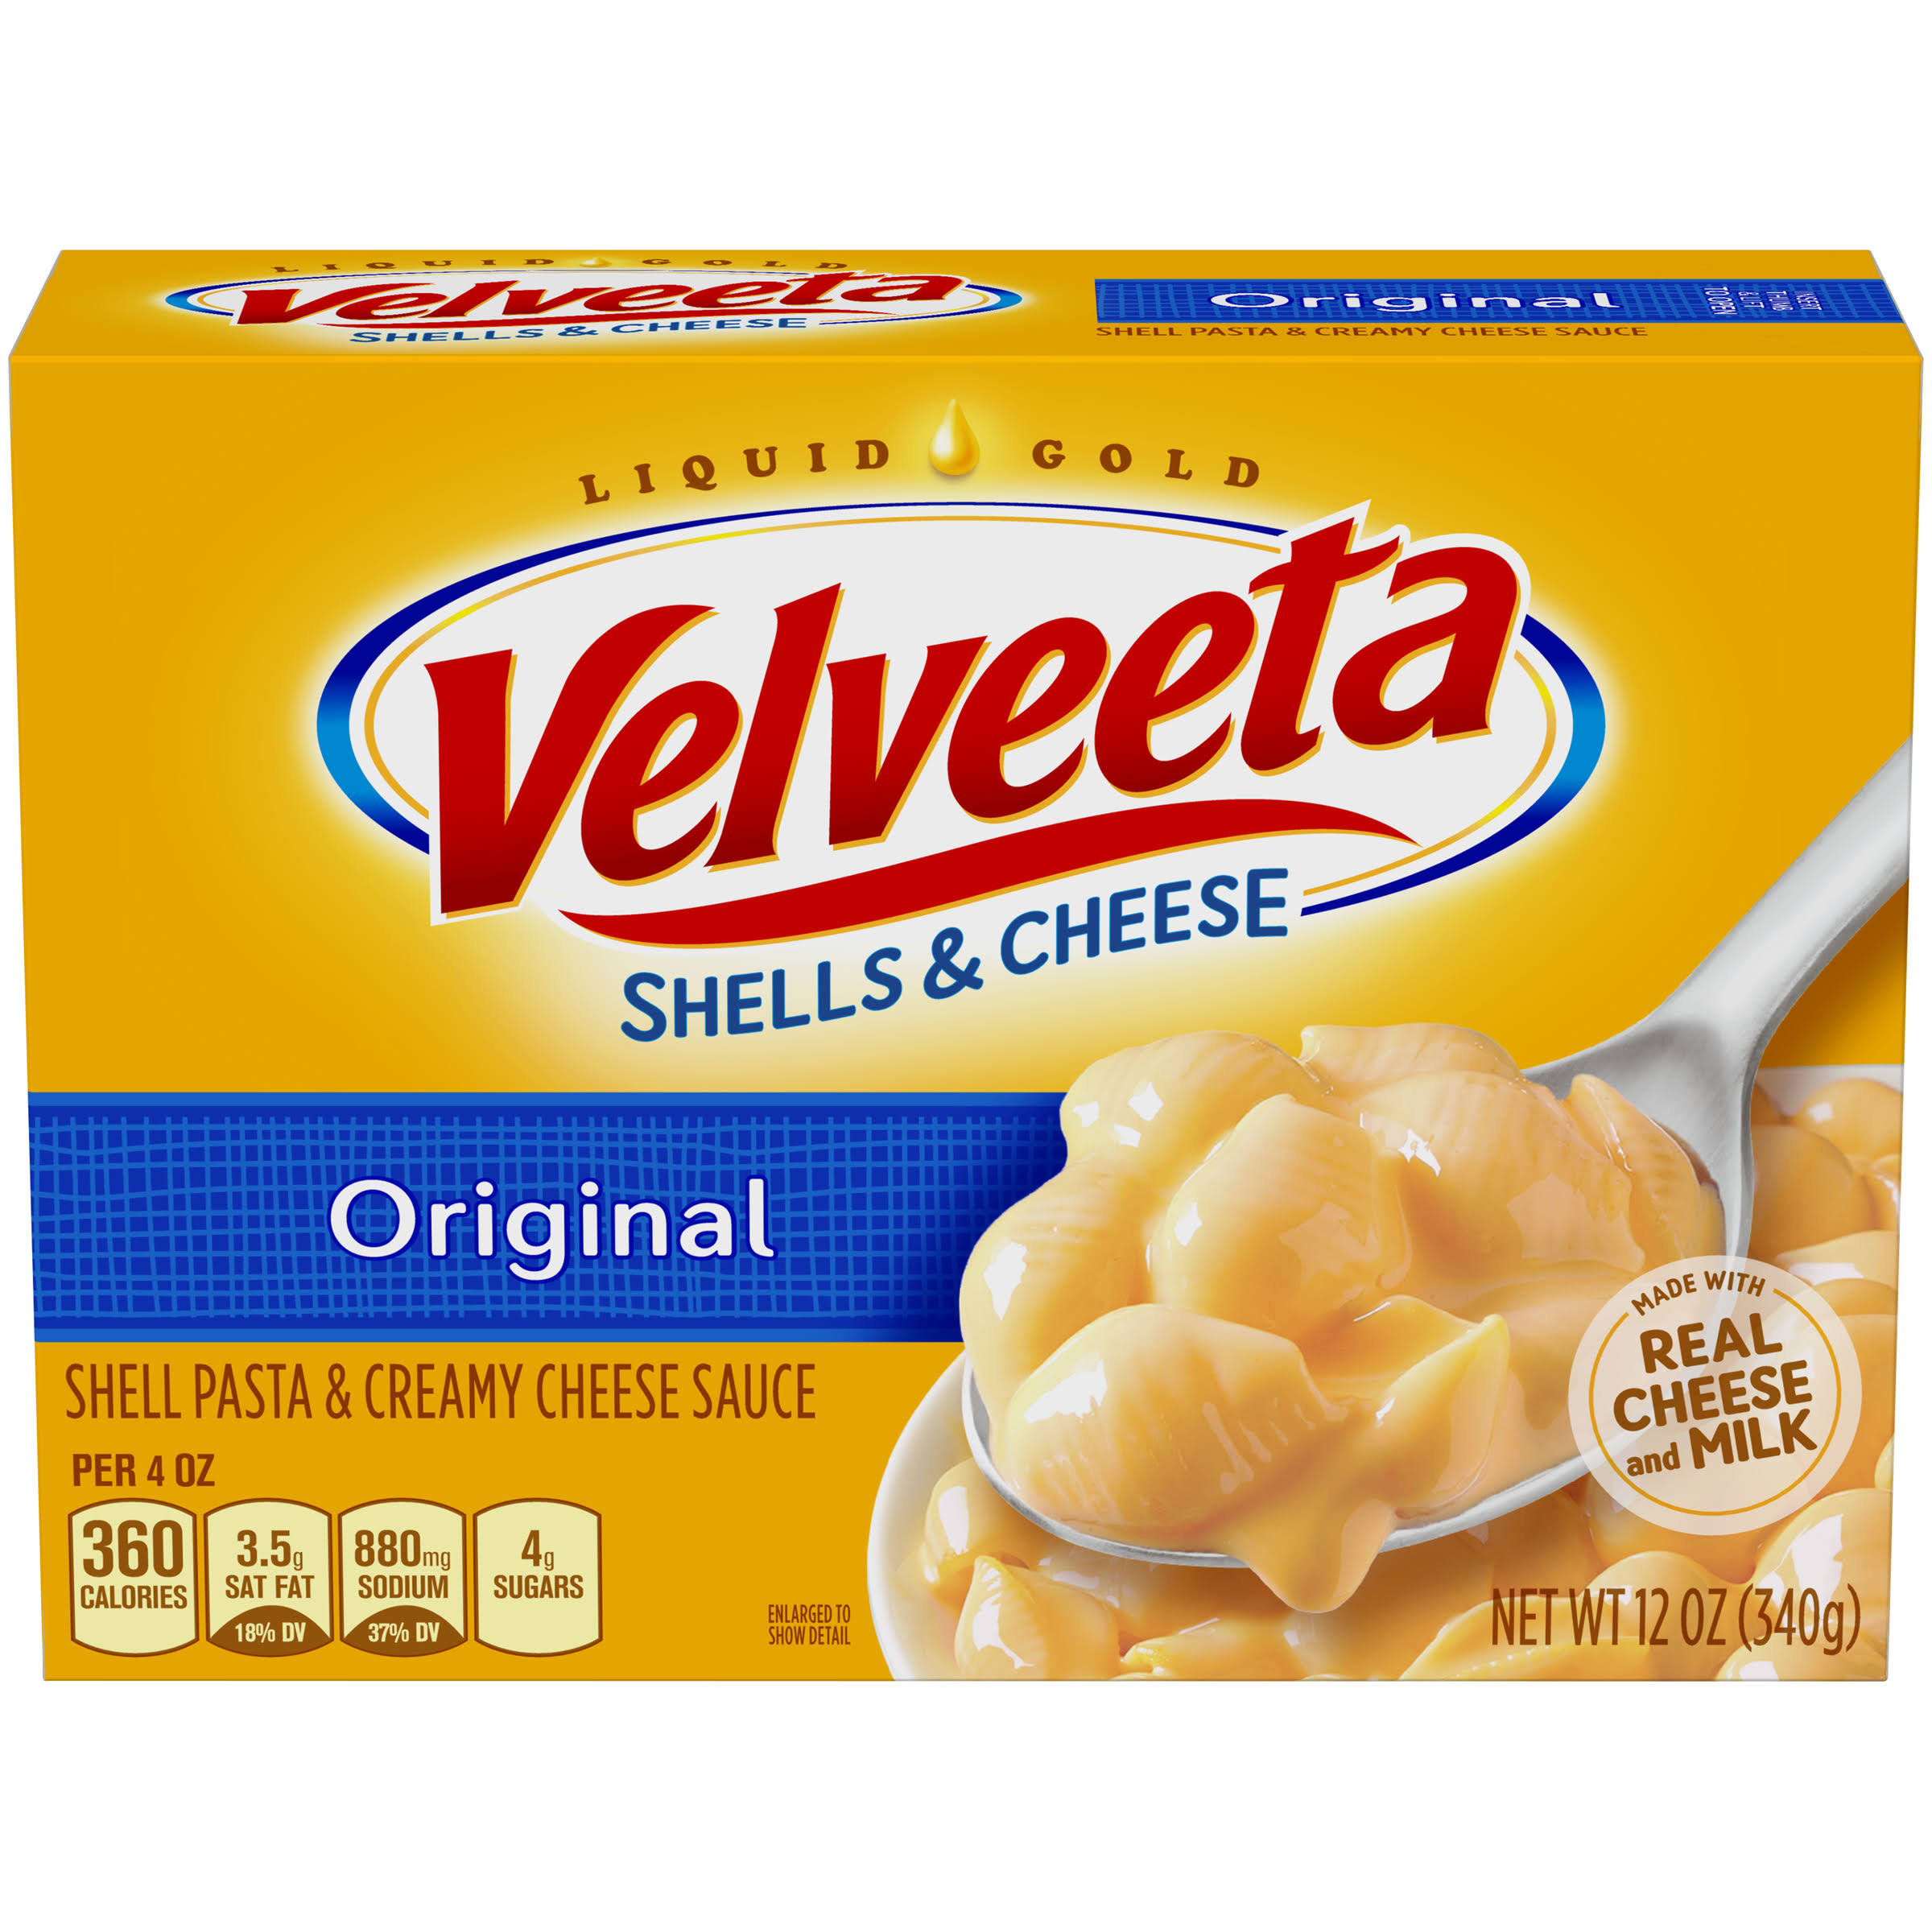 Kraft Velveeta Shell Pasta and Creamy Cheese Sauce - Original, 12oz, 12 Pack